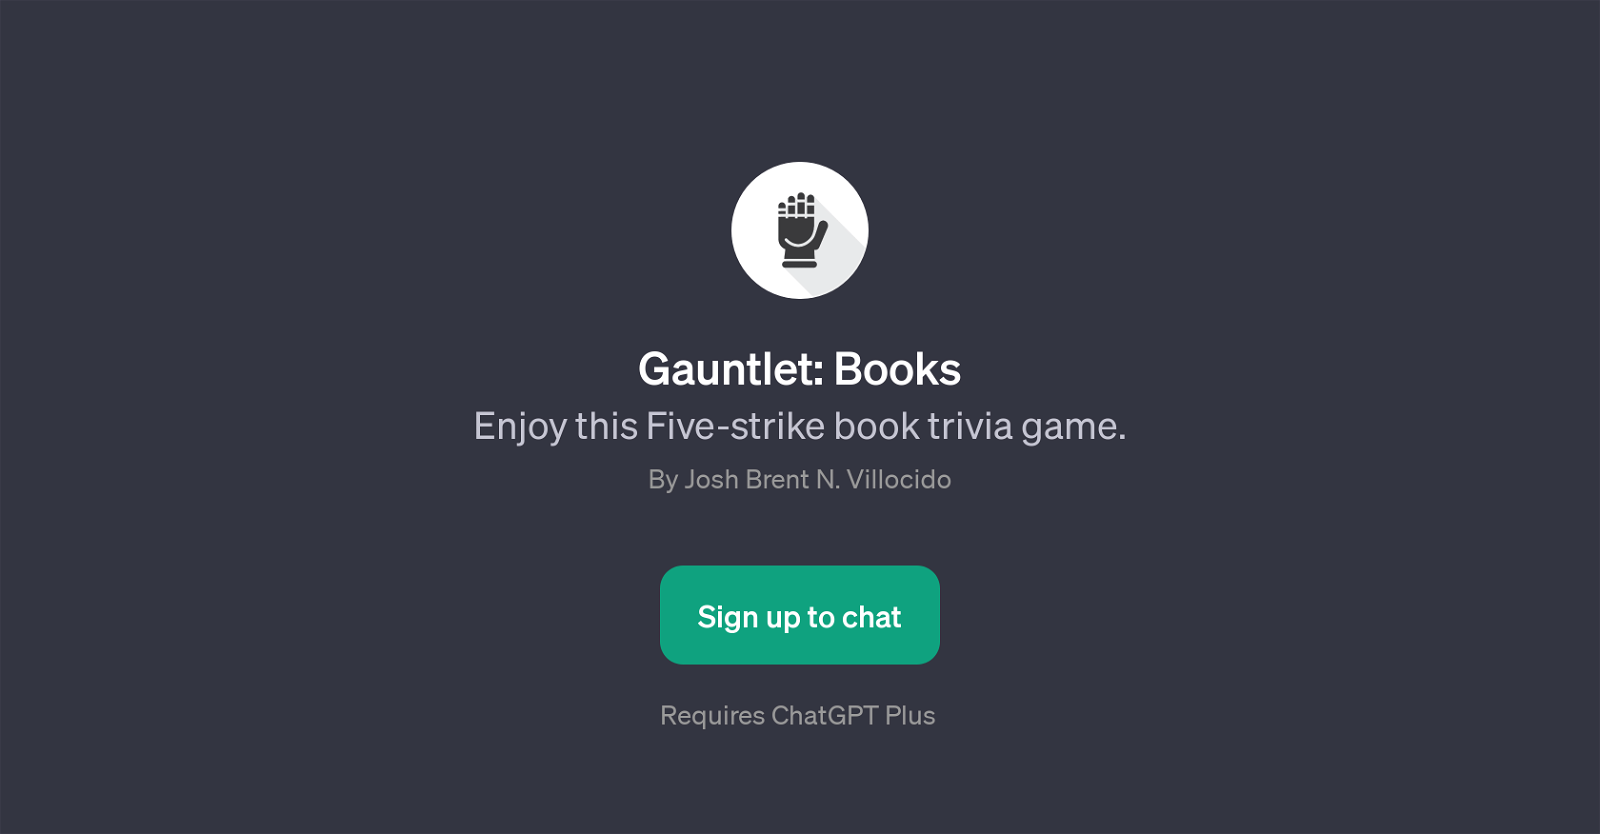 Gauntlet: Books website